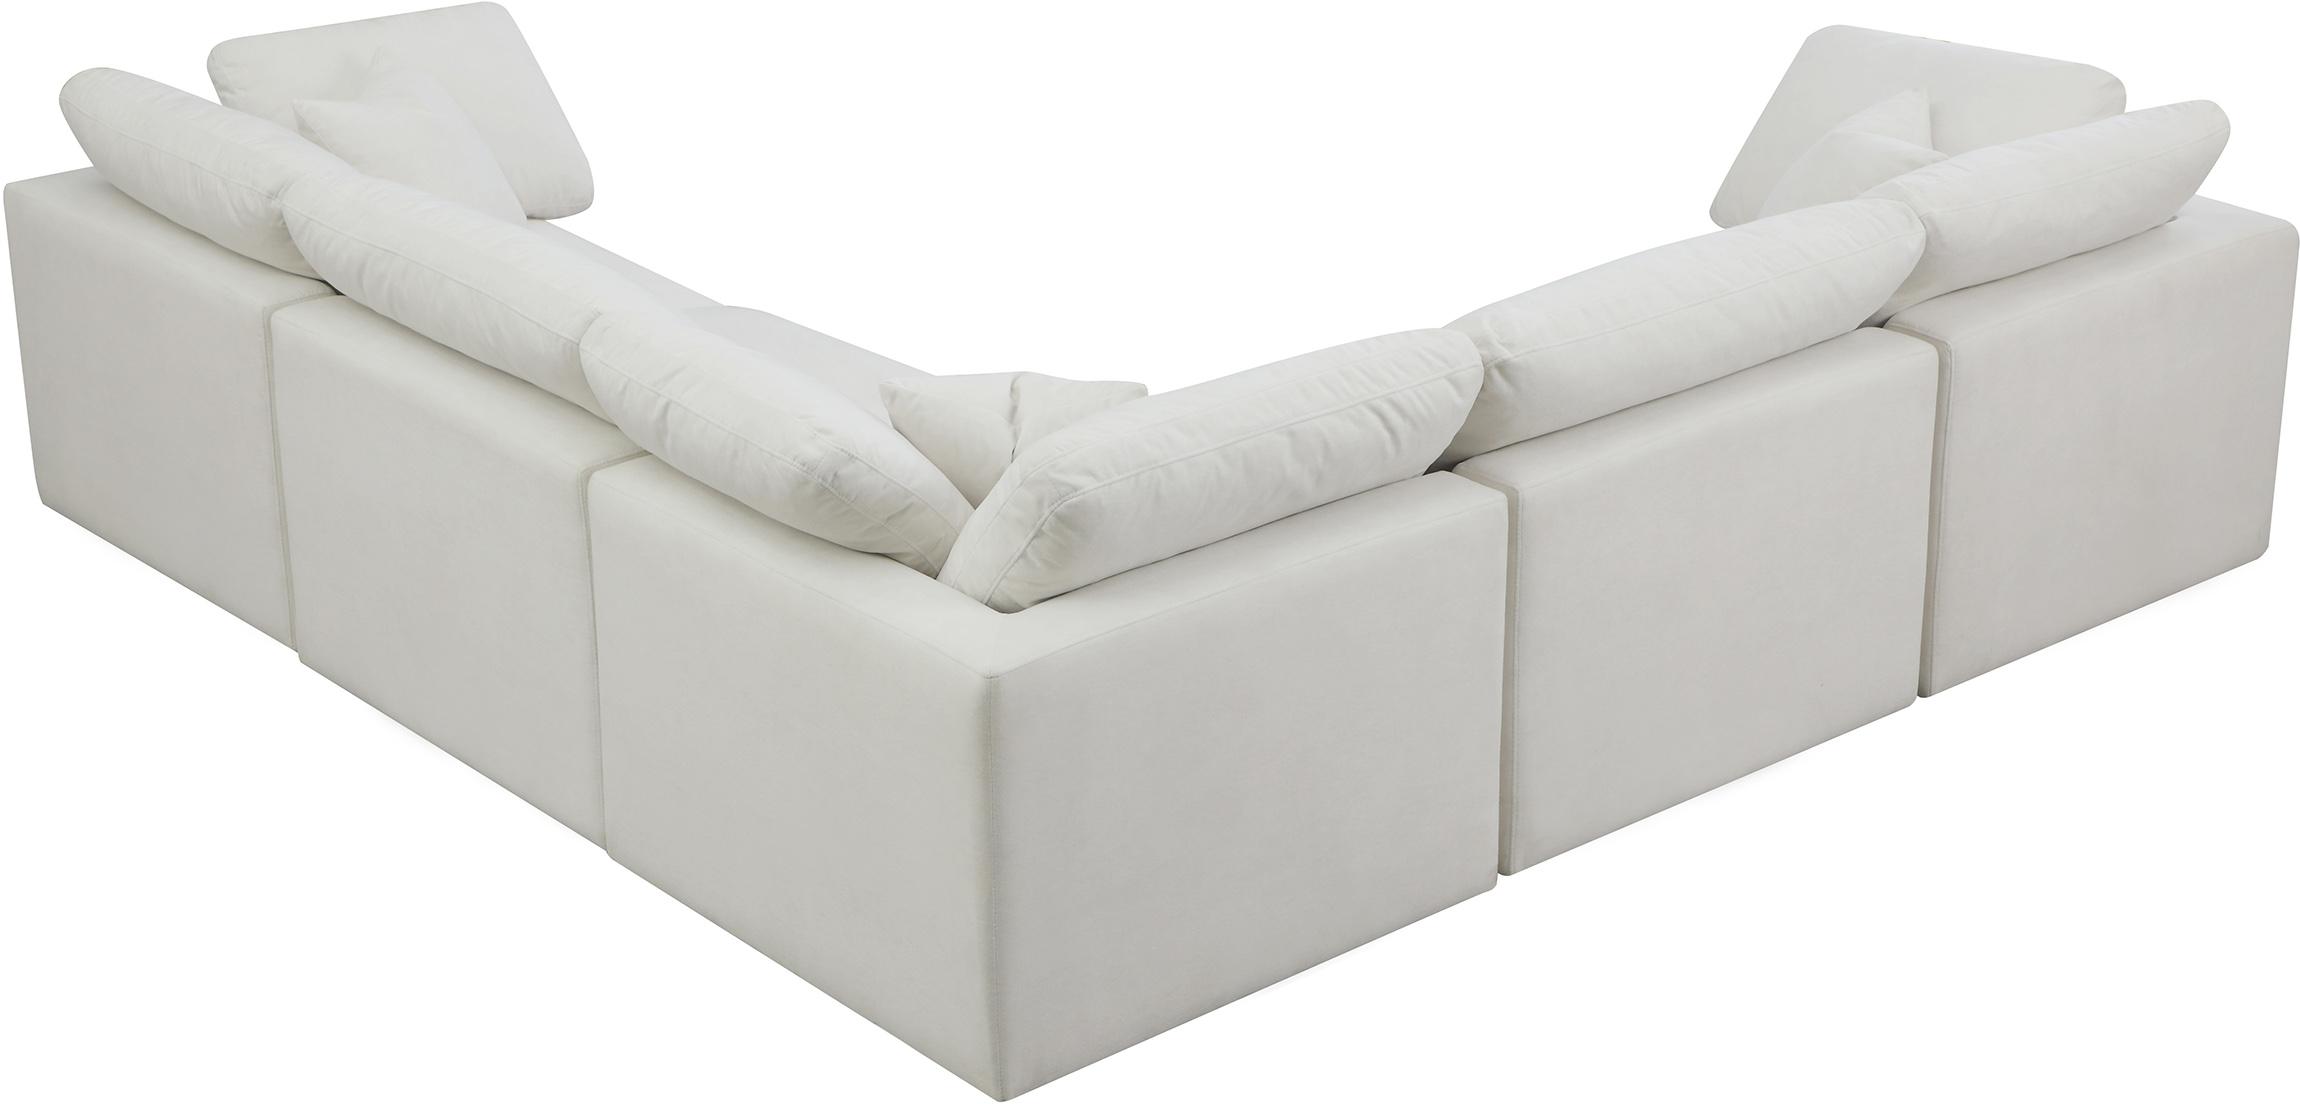 

    
Meridian Furniture 602Cream-Sec5C Modular Sectional Sofa Cream 602Cream-Sec5C
